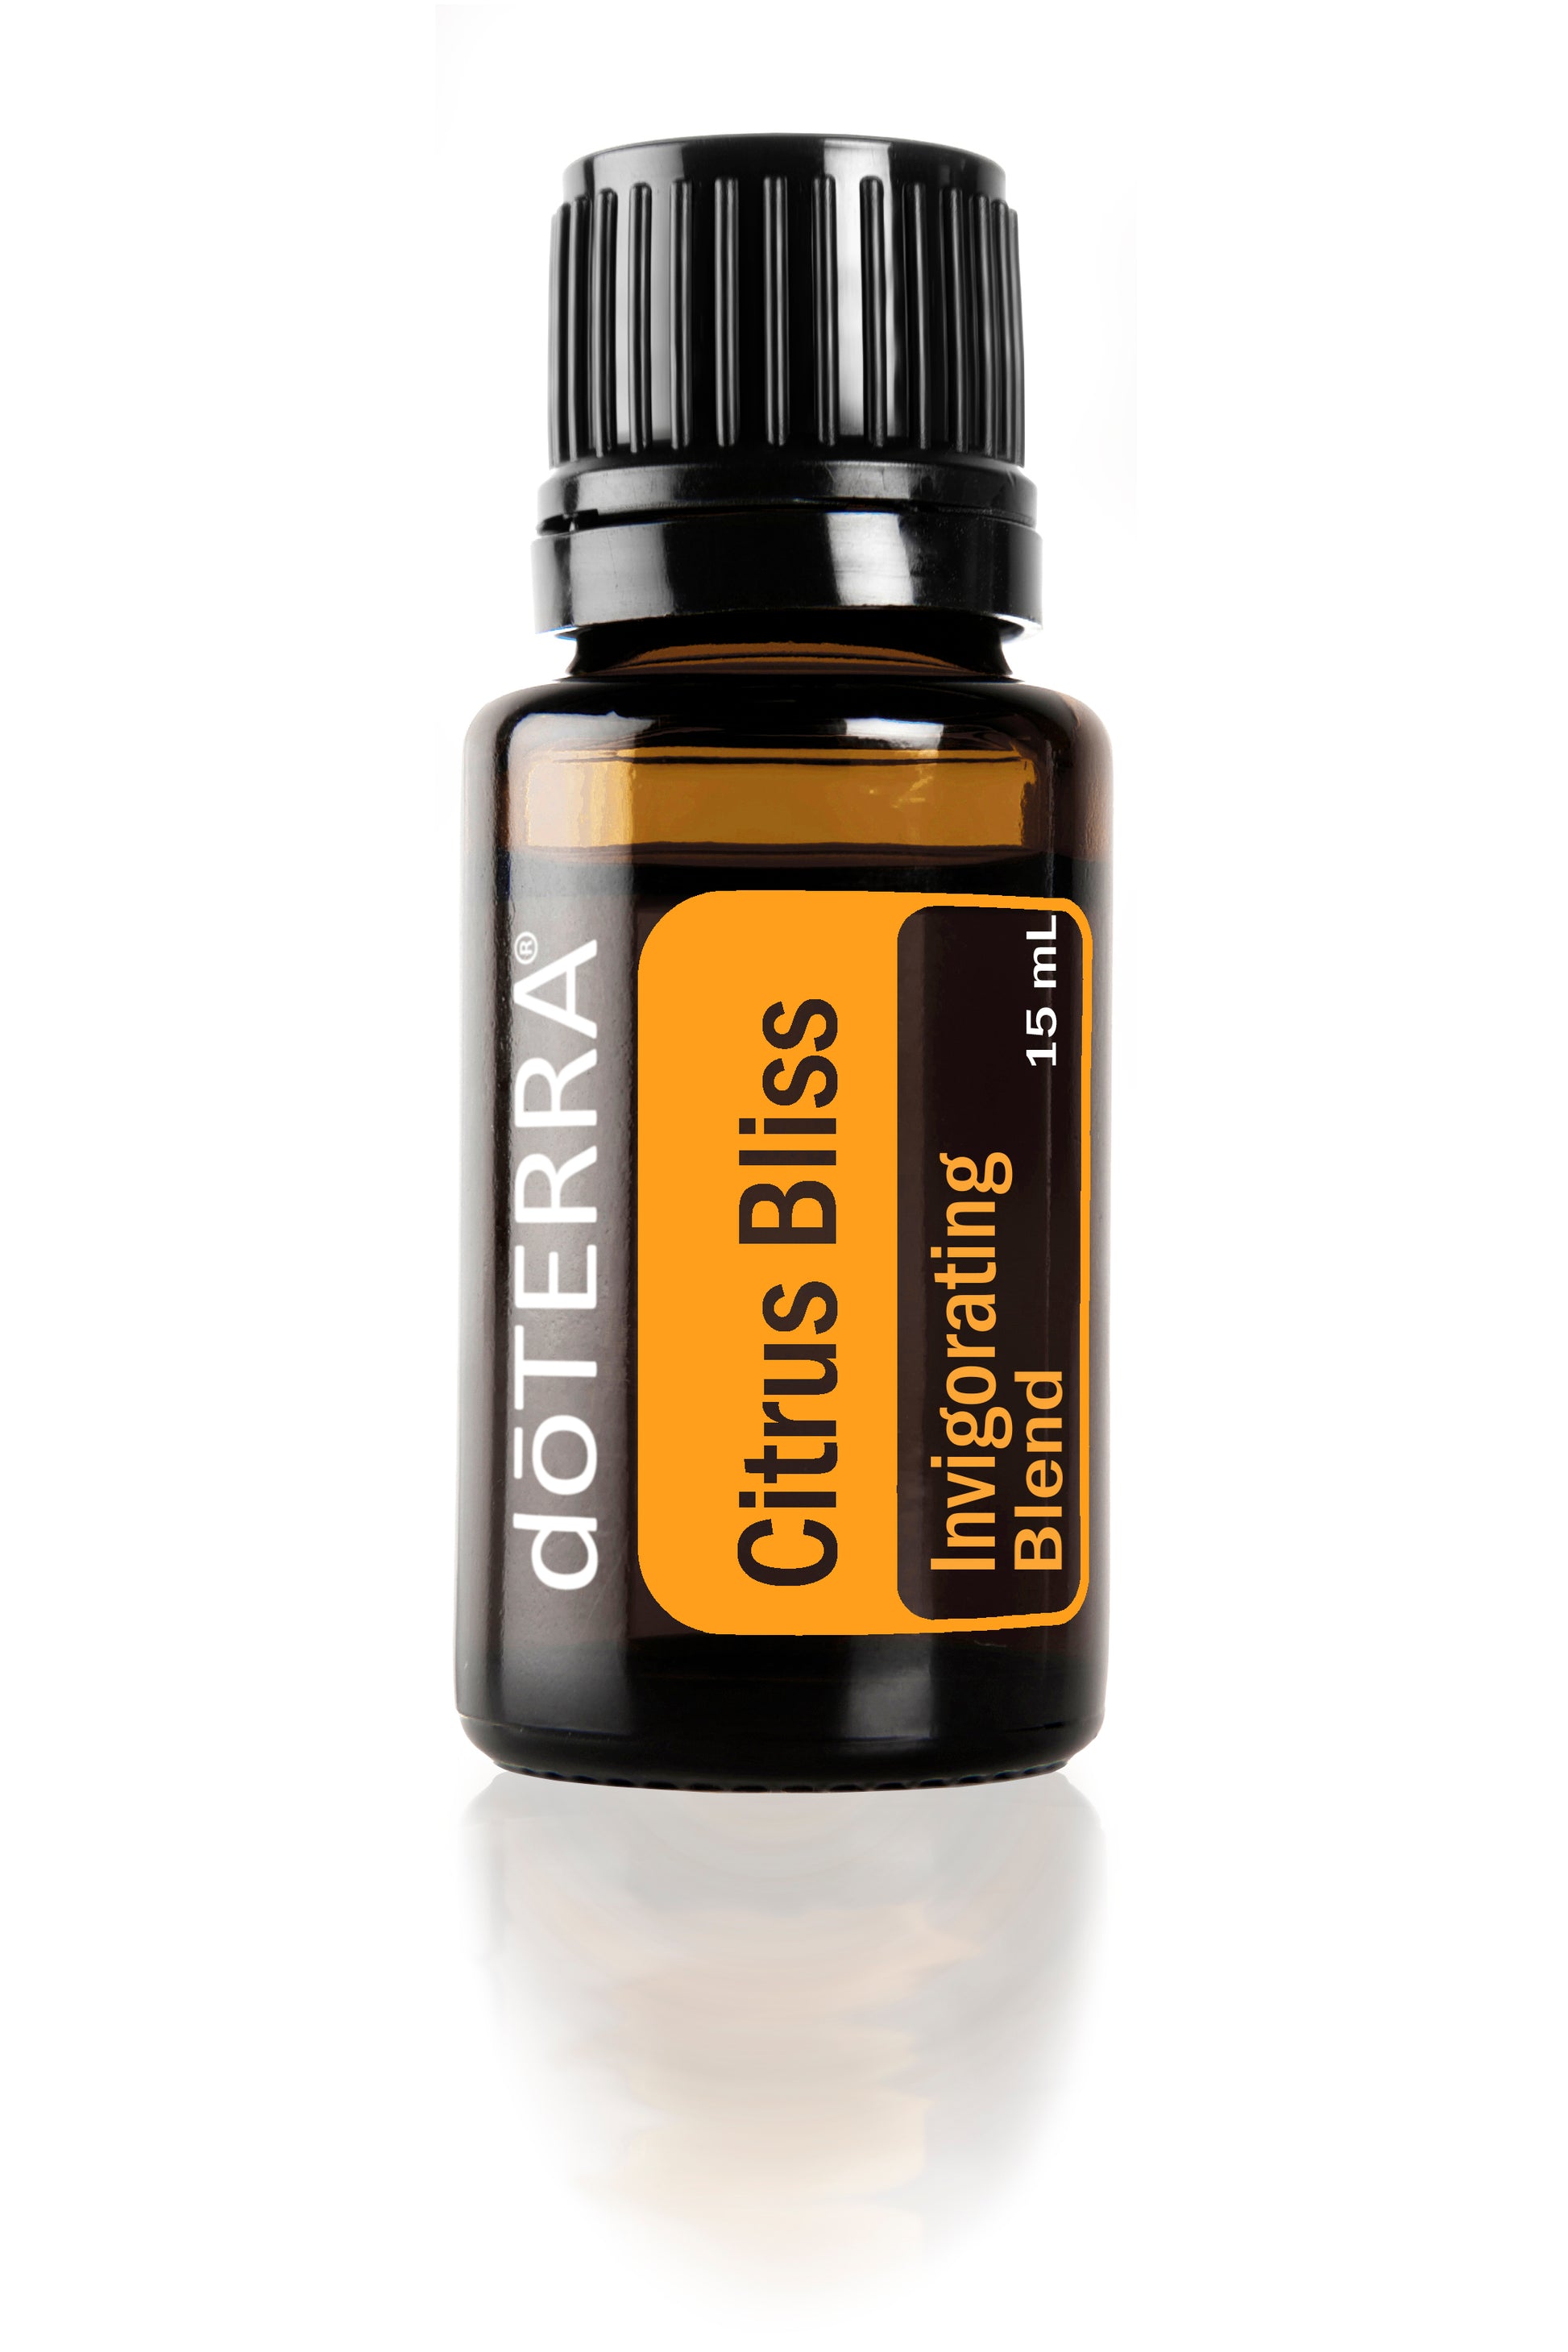 DoTerra - Citrus Bliss Blend - 15ml Essential Oil